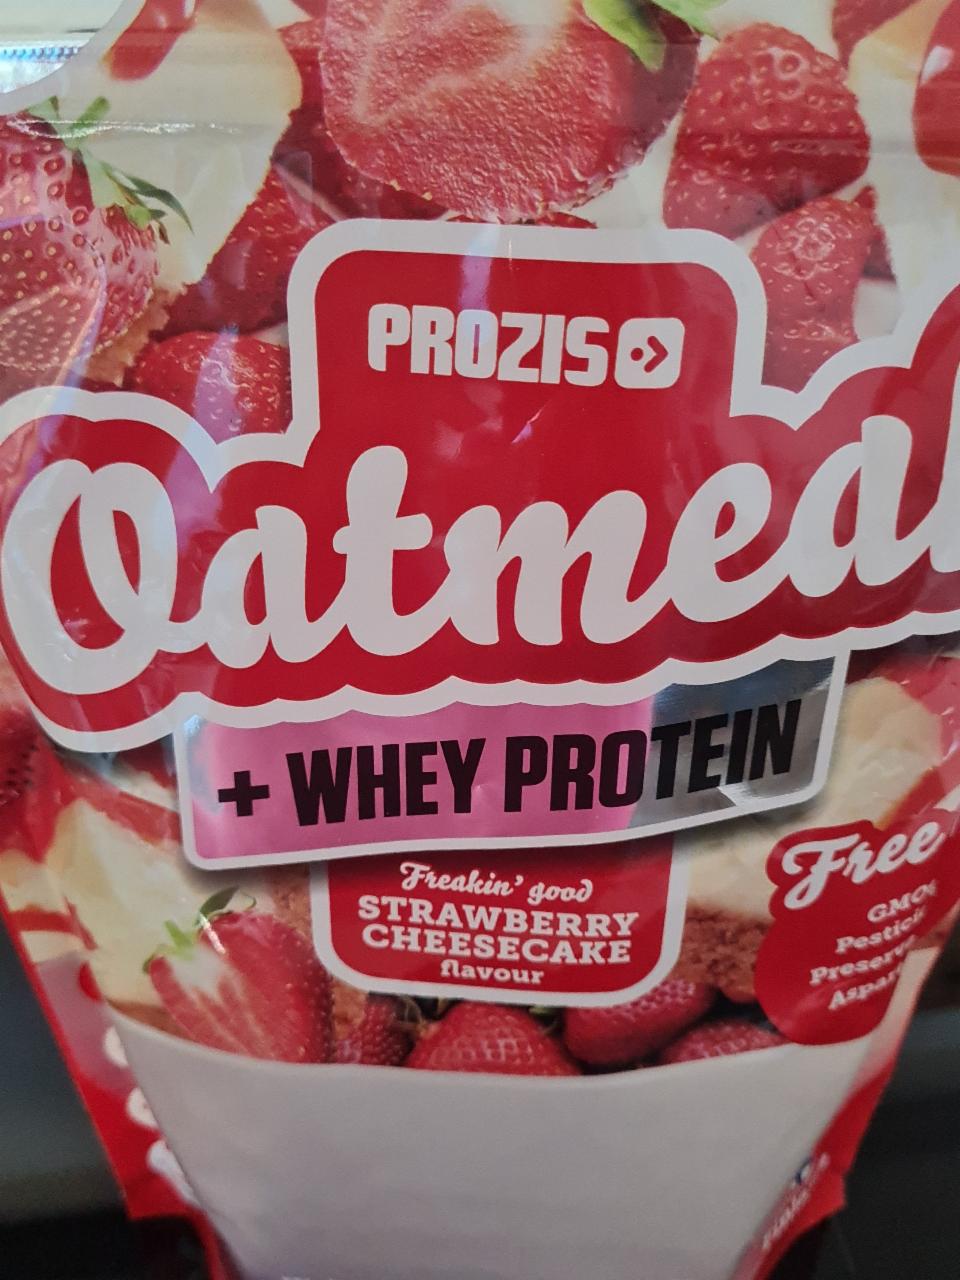 Fotografie - Oatmeal + Whey protein Strawberry Cheesecake Prozis